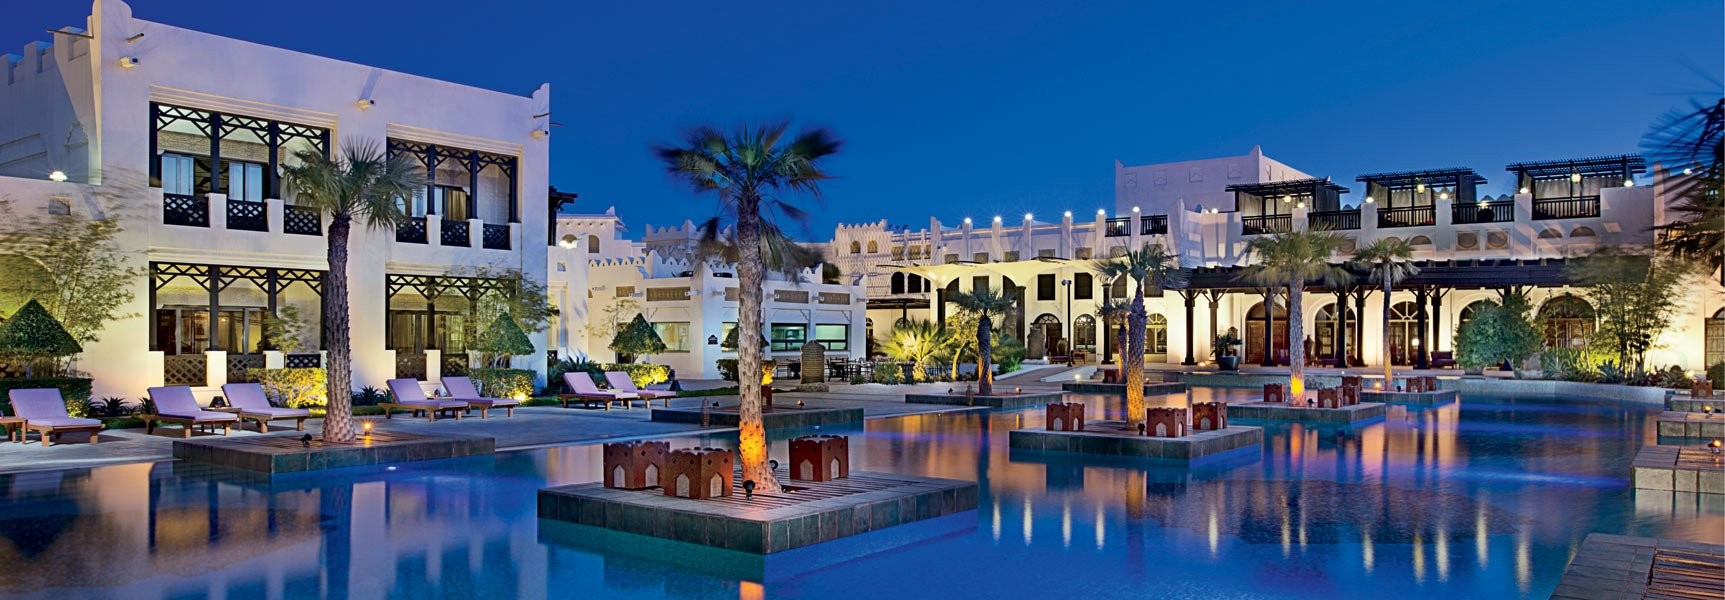 Hotel Qatar